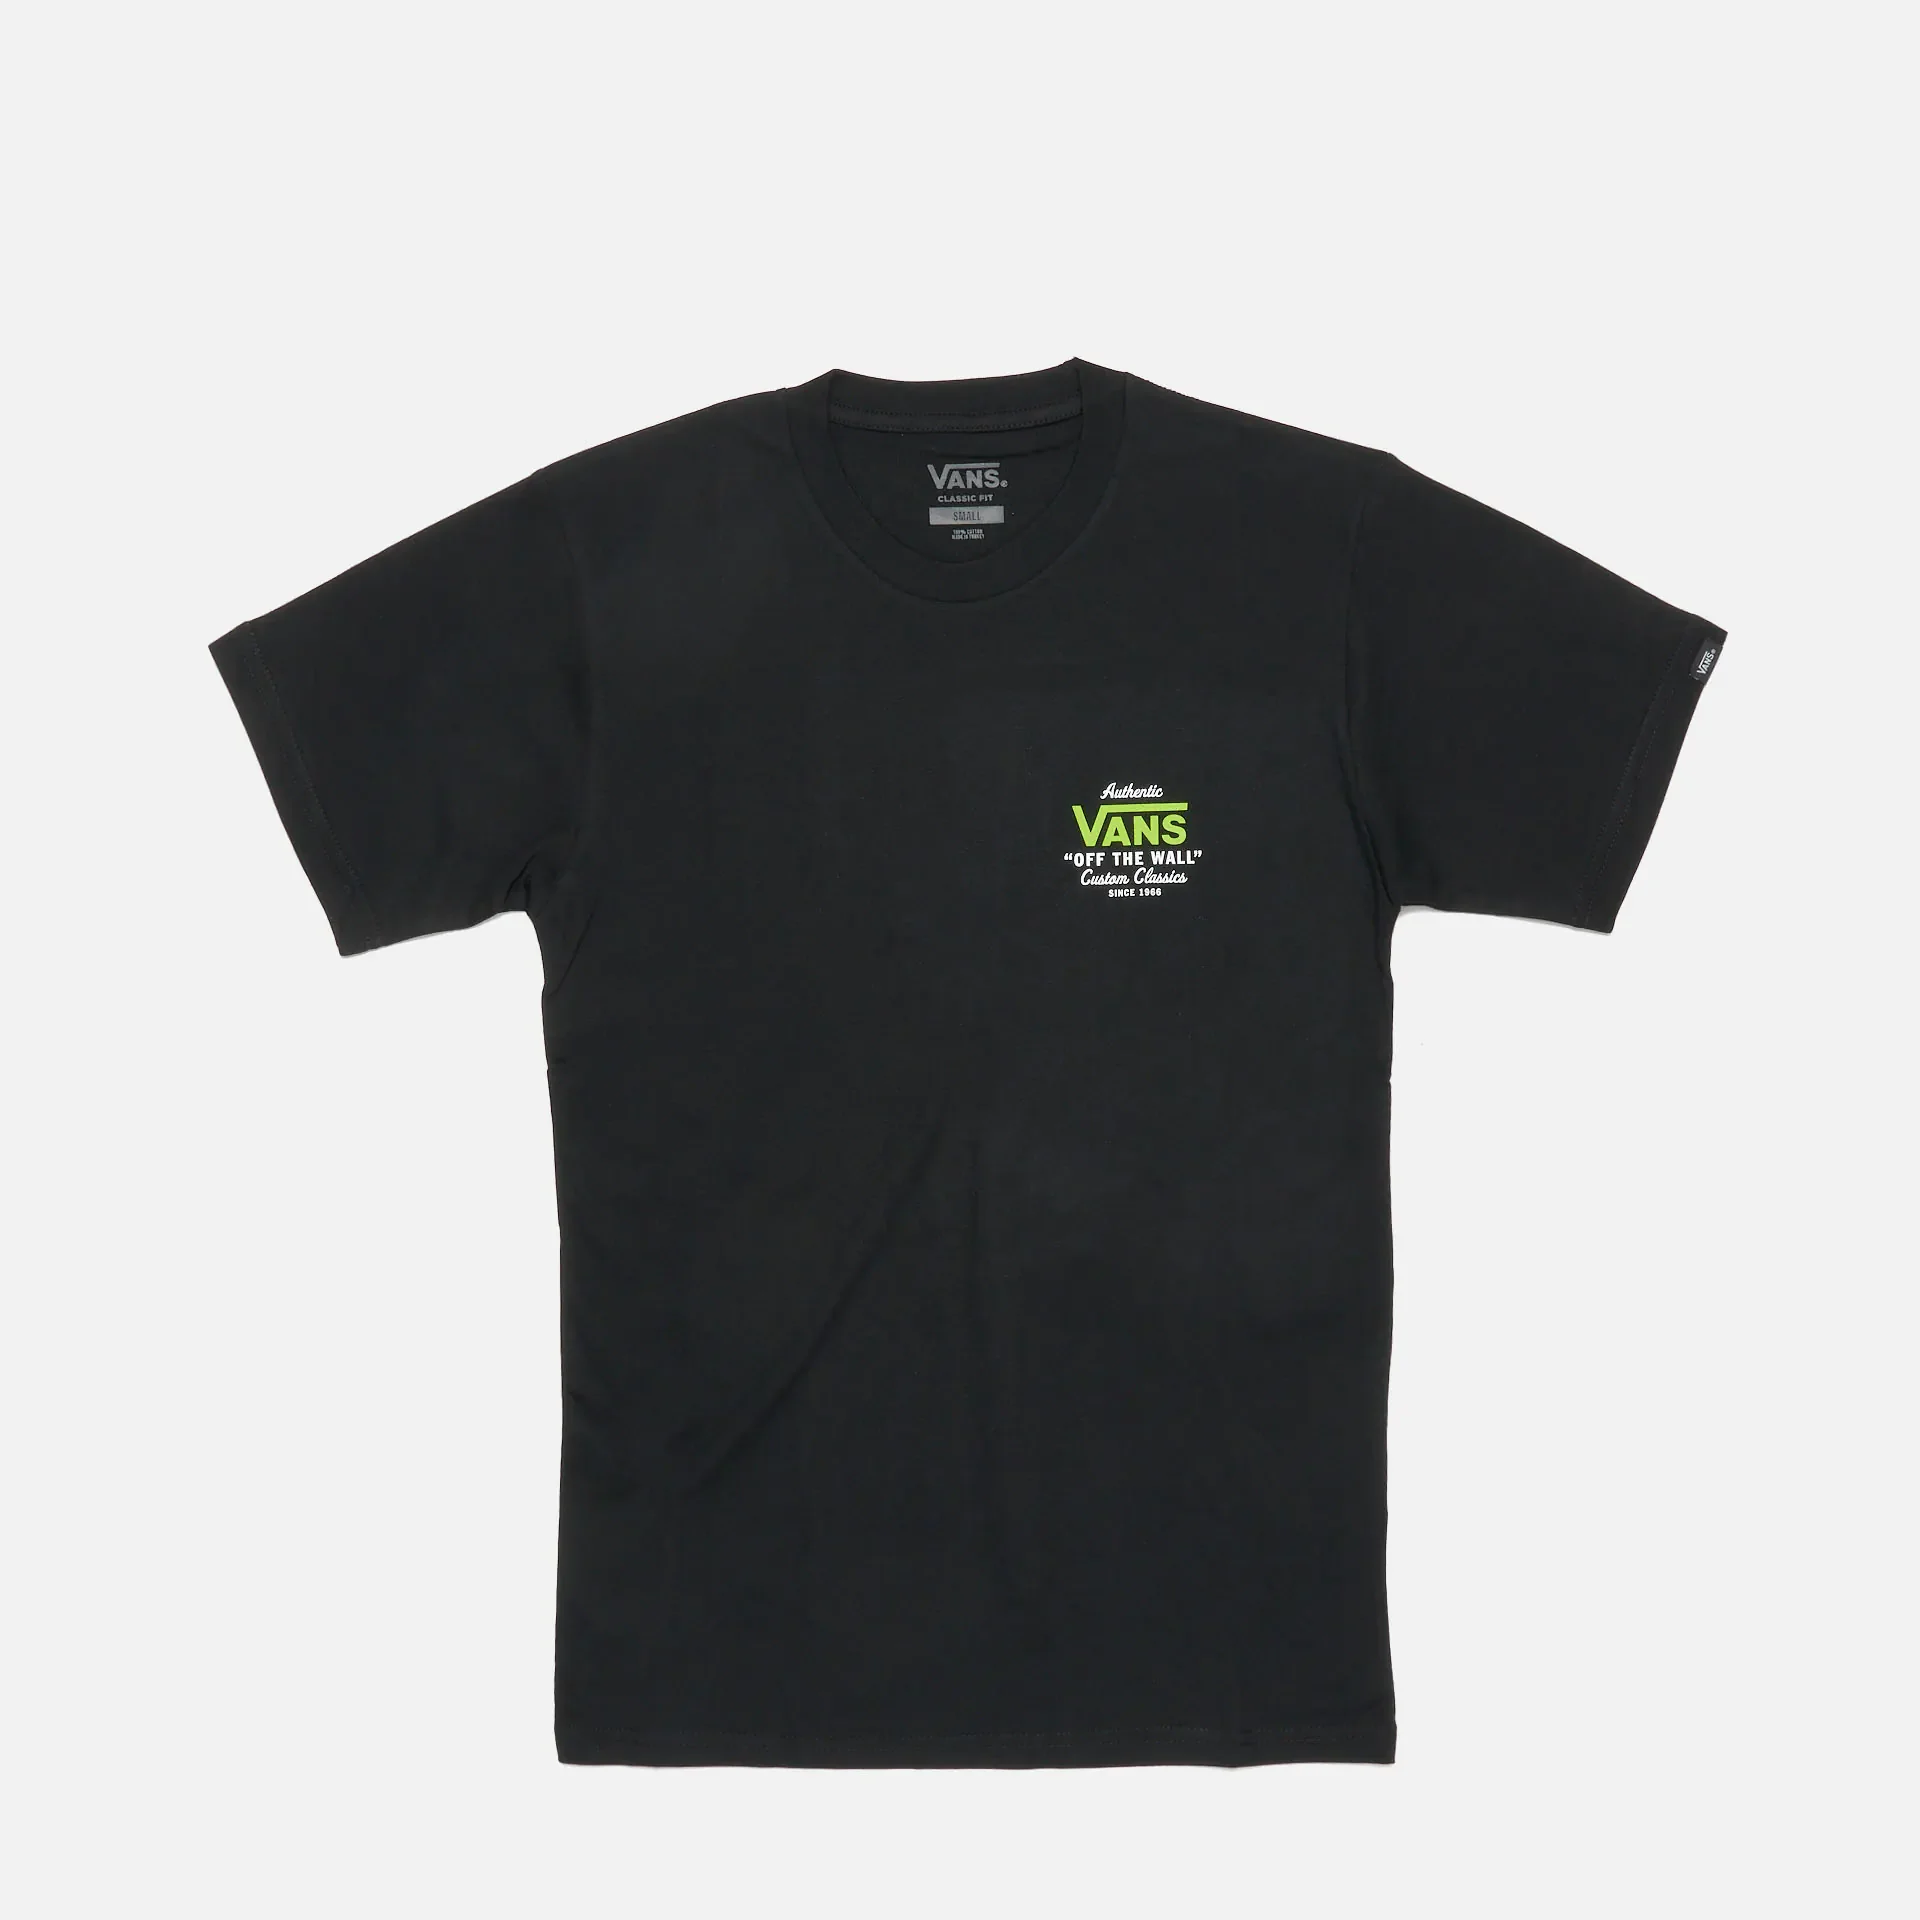 Vans Holder Classic T-Shirt Black/Lime Green